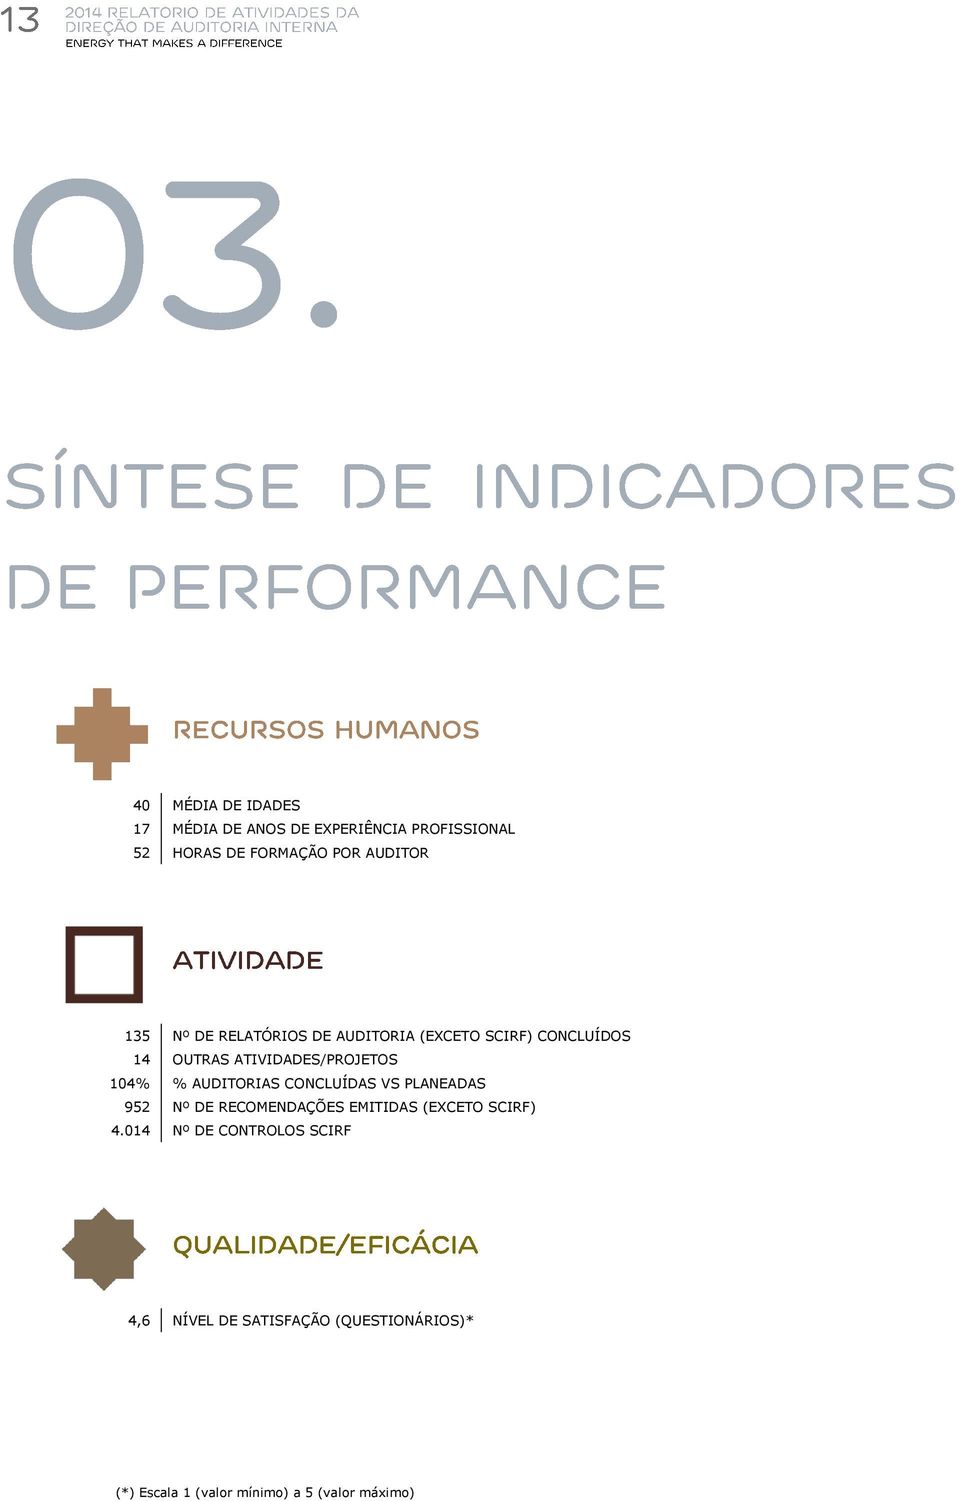 AUDITORIAS CONCLUÍDAS VS PLANEADAS 952 Nº DE RECOMENDAÇÕES EMITIDAS (EXCETO SCIRF) 4.